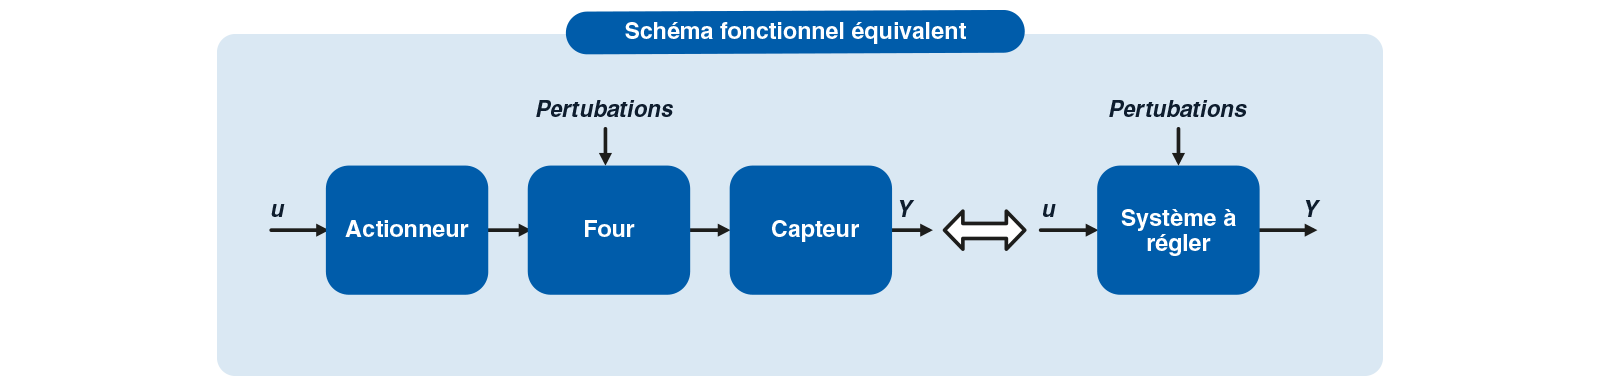 schema fonctionnel equivalent